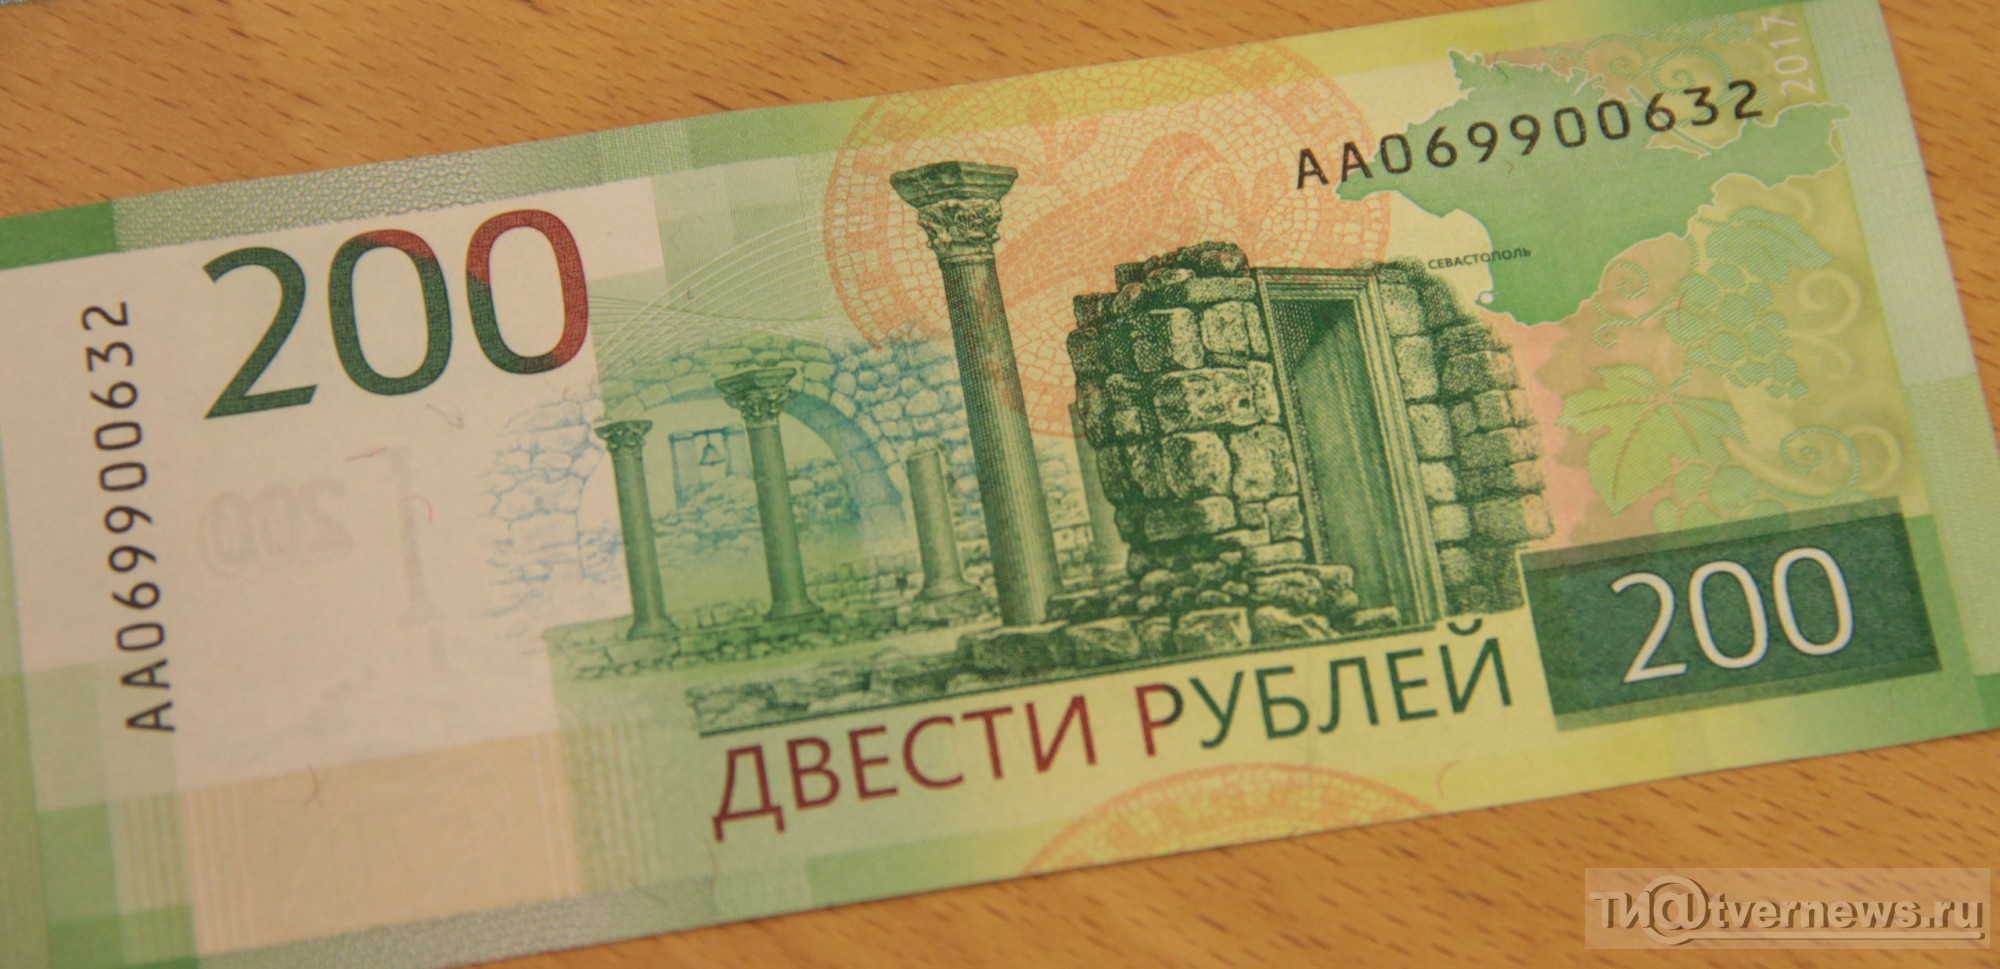 200 руб купюра. 200 Рублей. Купюра 200 рублей. 200 Рублей банкнота. Купюра номиналом 200 рублей.